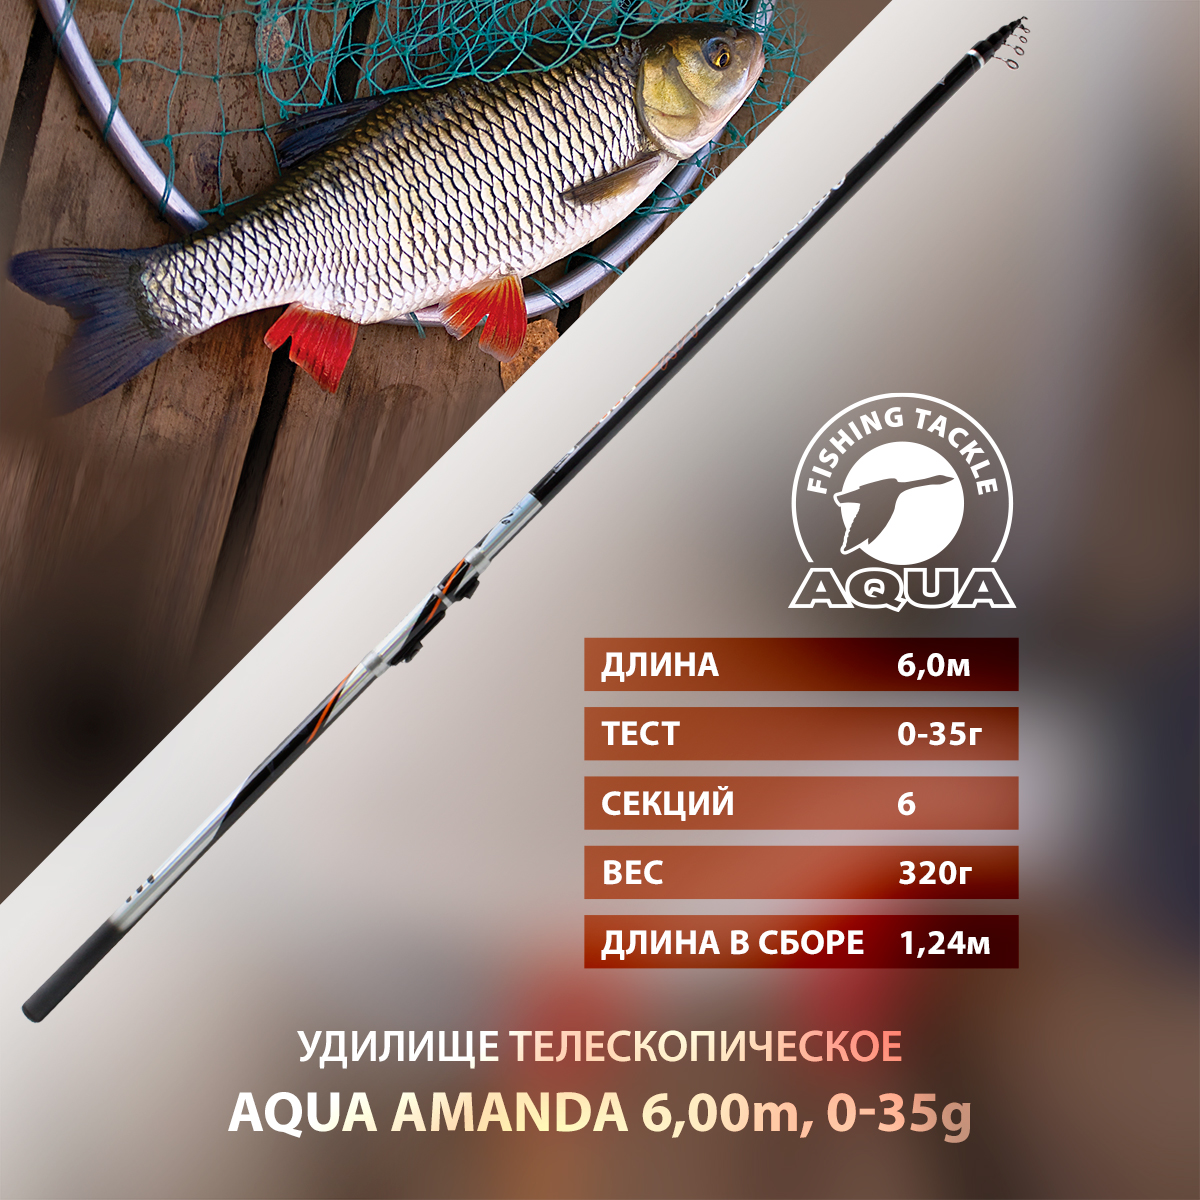 Удилище телескопическое для рыбалки AQUA AMANDA с кольцами